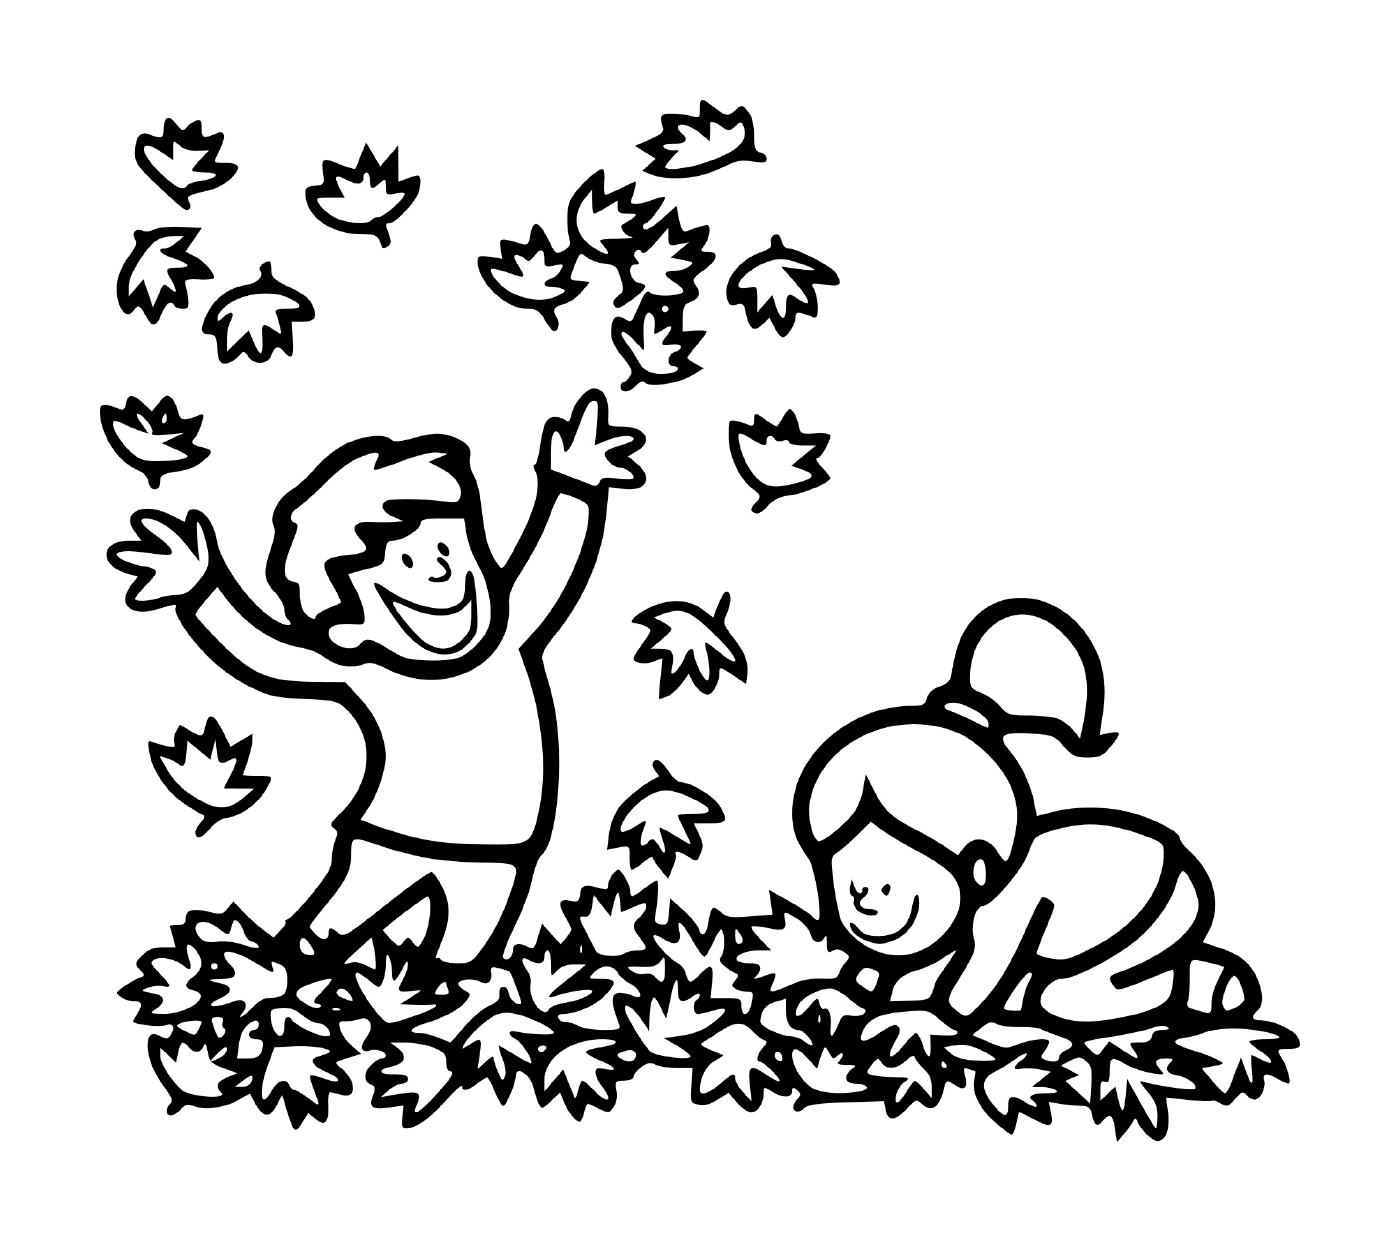  Un chico y una chica jugando en las hojas 